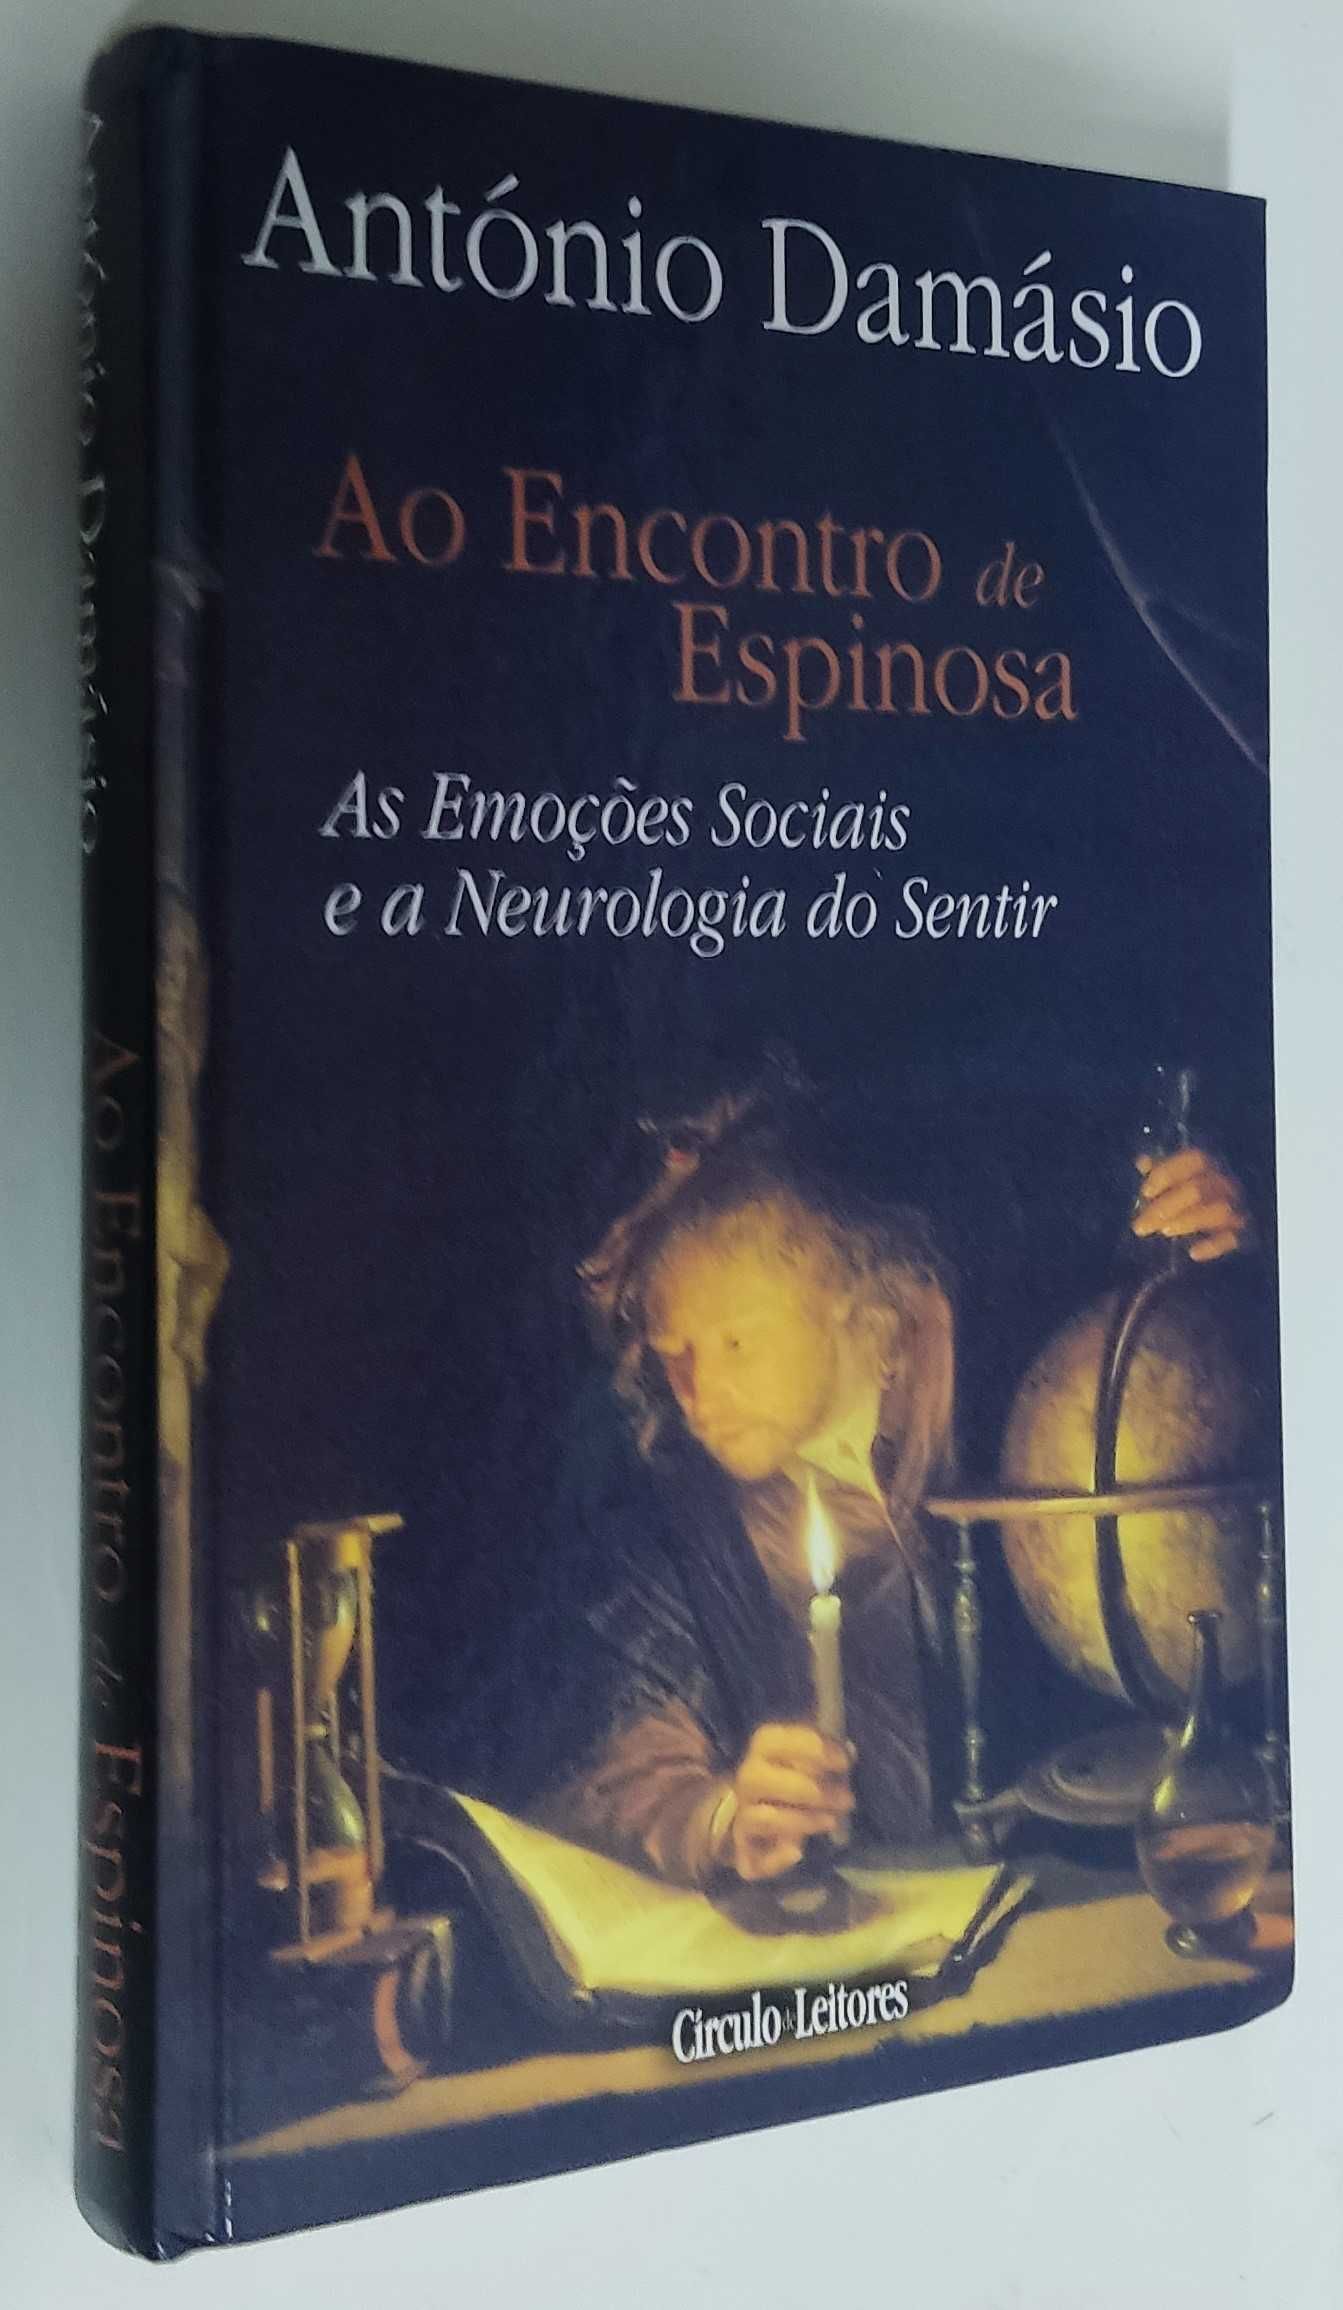 Livro "Ao encontro de Espinosa" - António Damásio